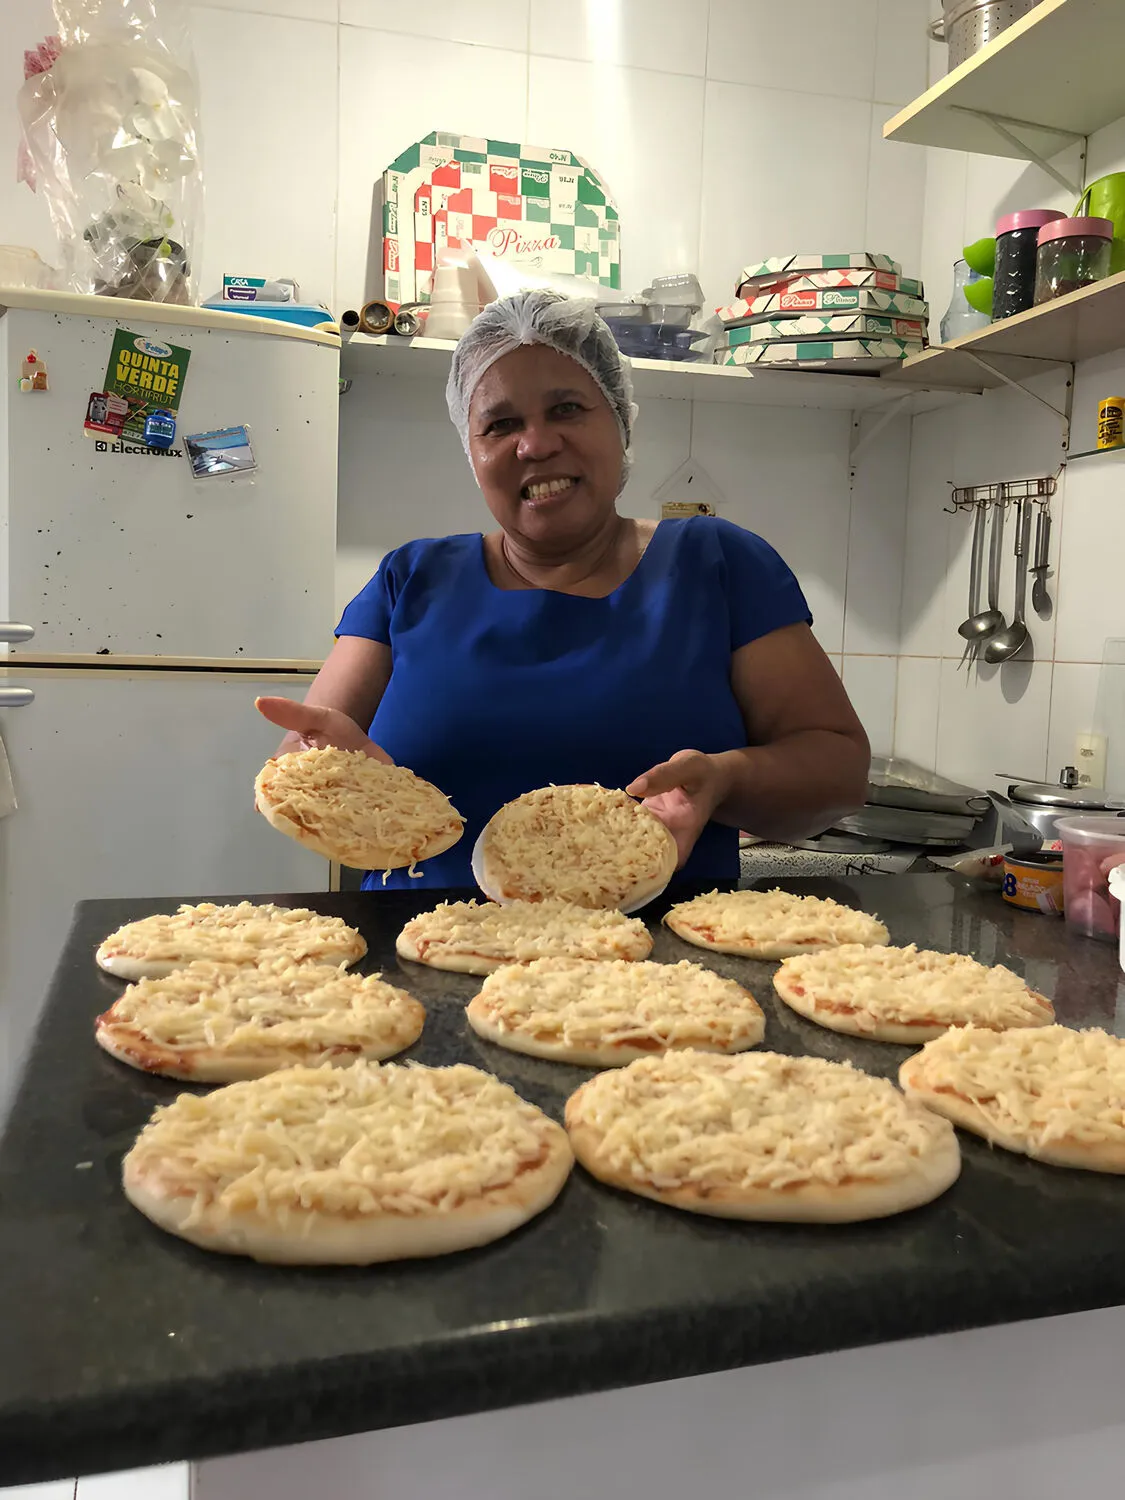 Irinalva trabalha com entrega de pizzas e elogia o CrediBahia Mulher: ‘Investi 
em insumos’